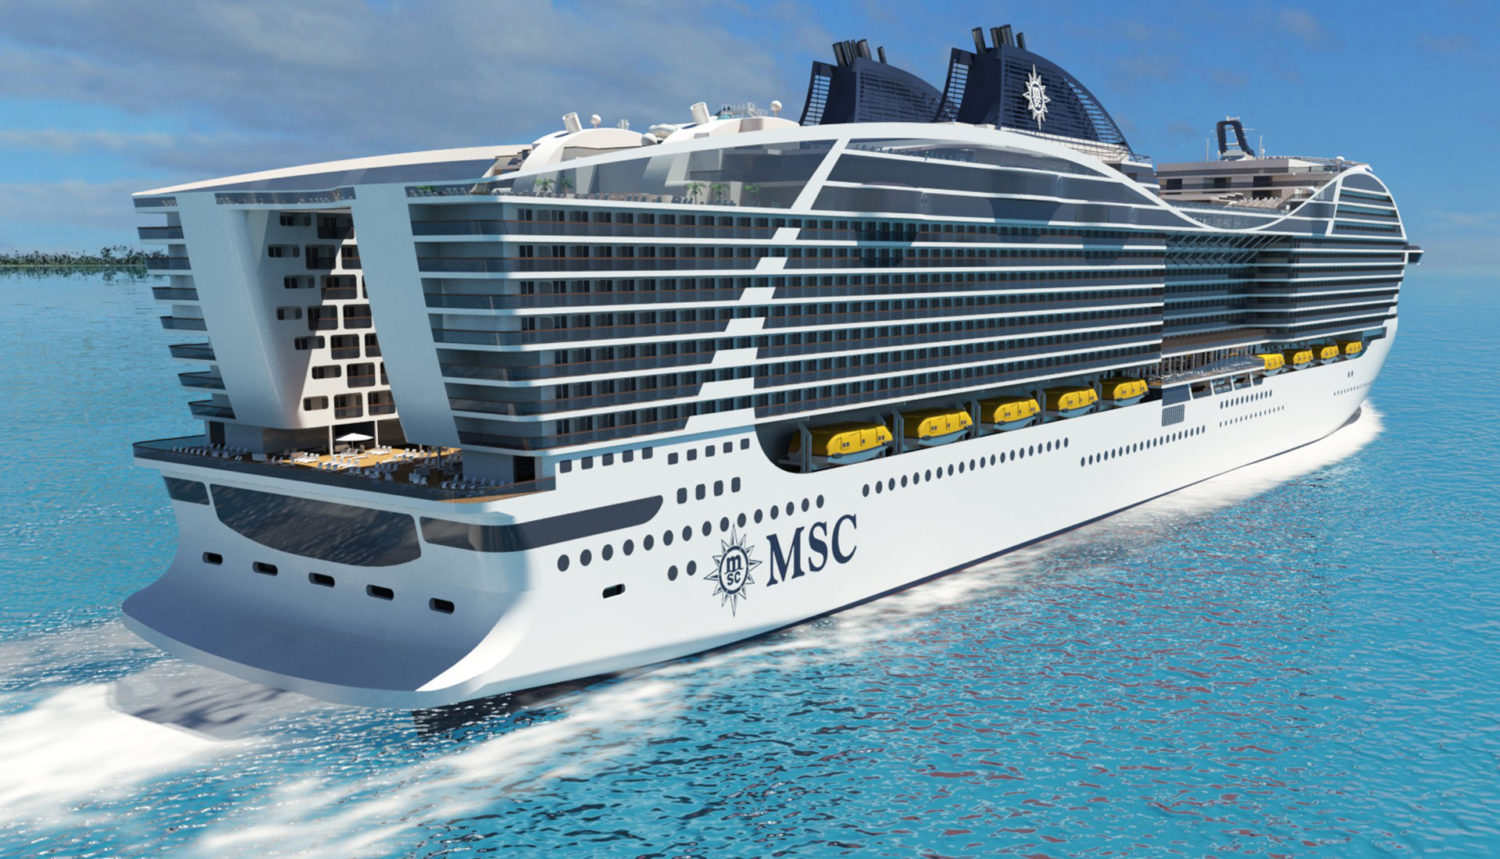 msc cruise ship orlando